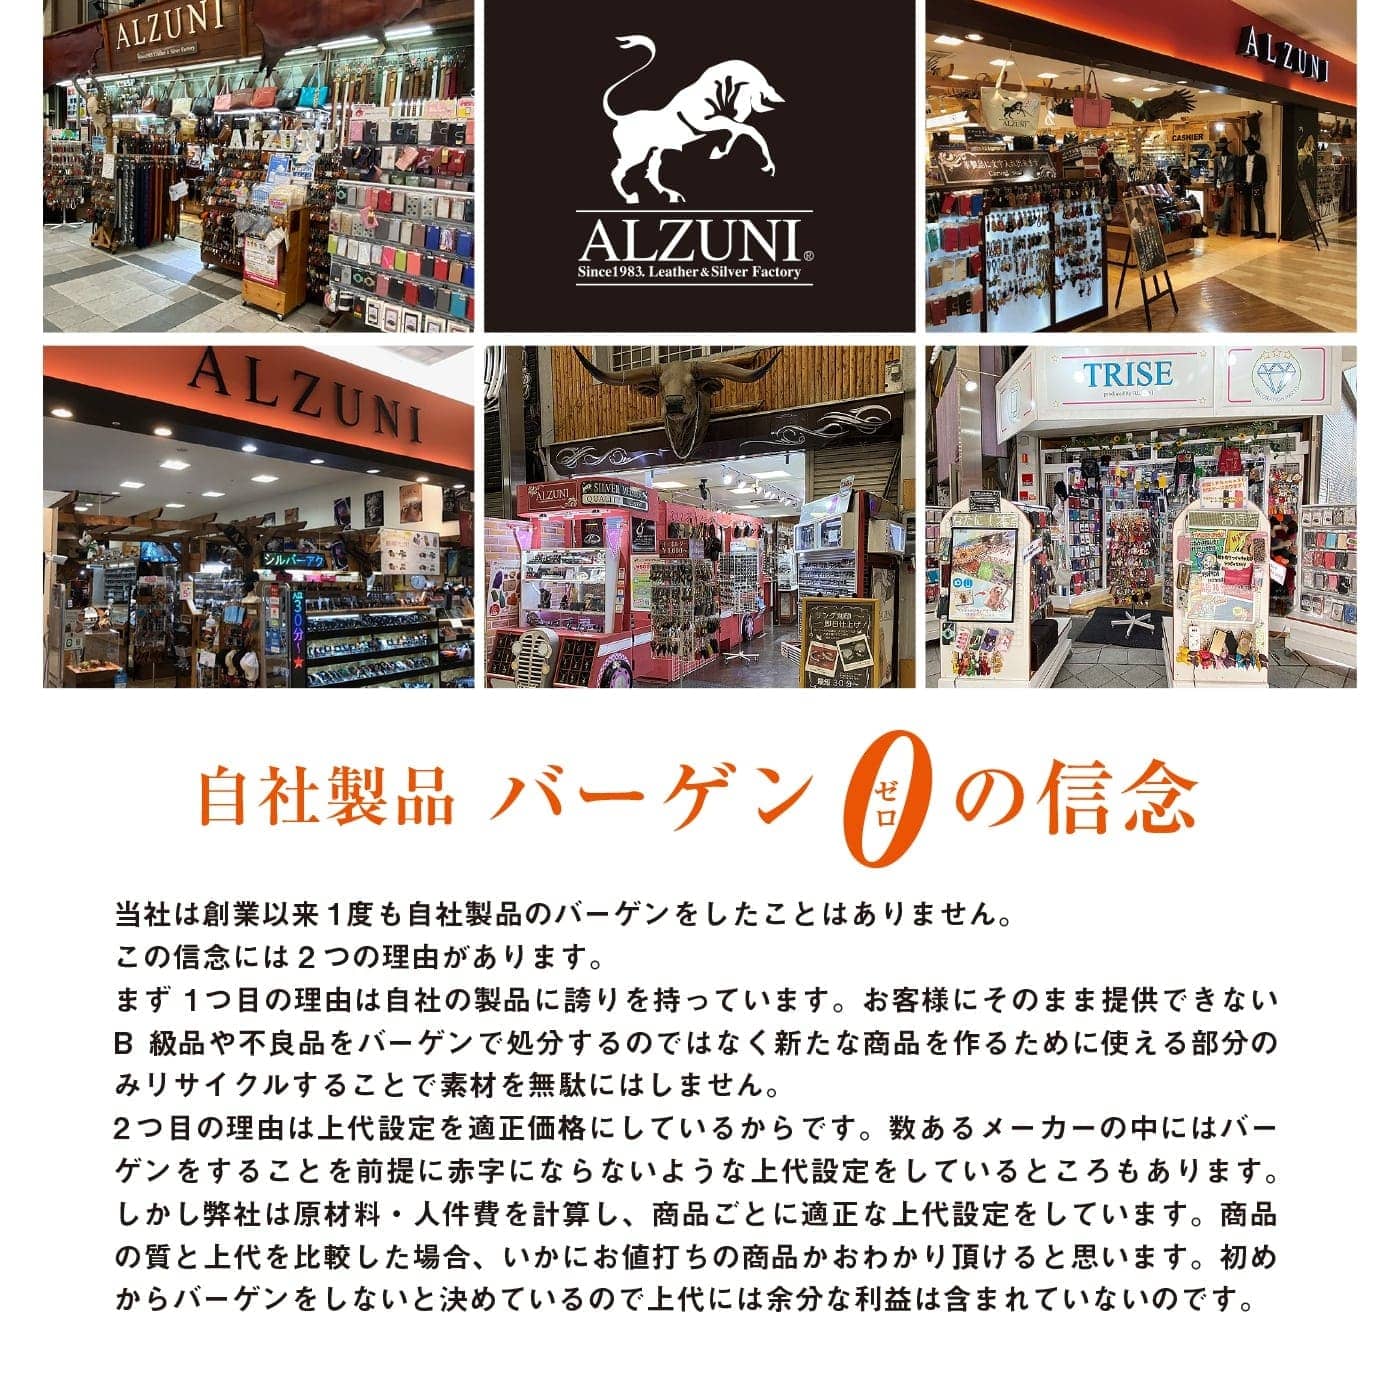 名古屋、東海地方、ショッピングセンター内のテナントなどアルズニの店舗外観